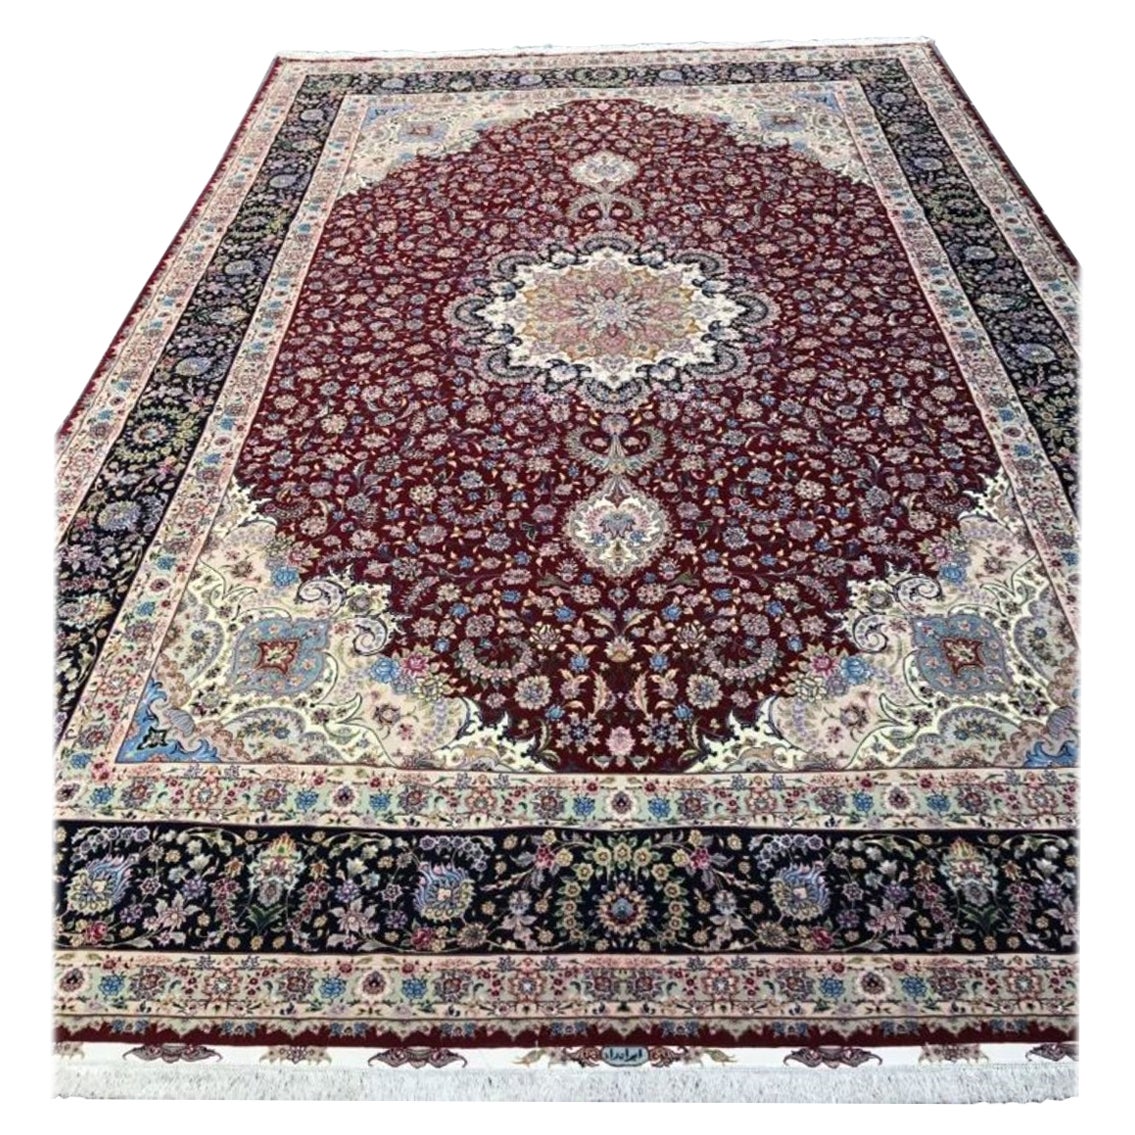 Magnifique velours persan Tabriz en laine et soie avec base en soie.  Ce tapis comporte environ 625 nœuds par pouce carré, soit un total de 17 000 000 nœuds noués à la main un par un. Il a fallu 9,5 ans pour achever cette magnifique pièce. Il est